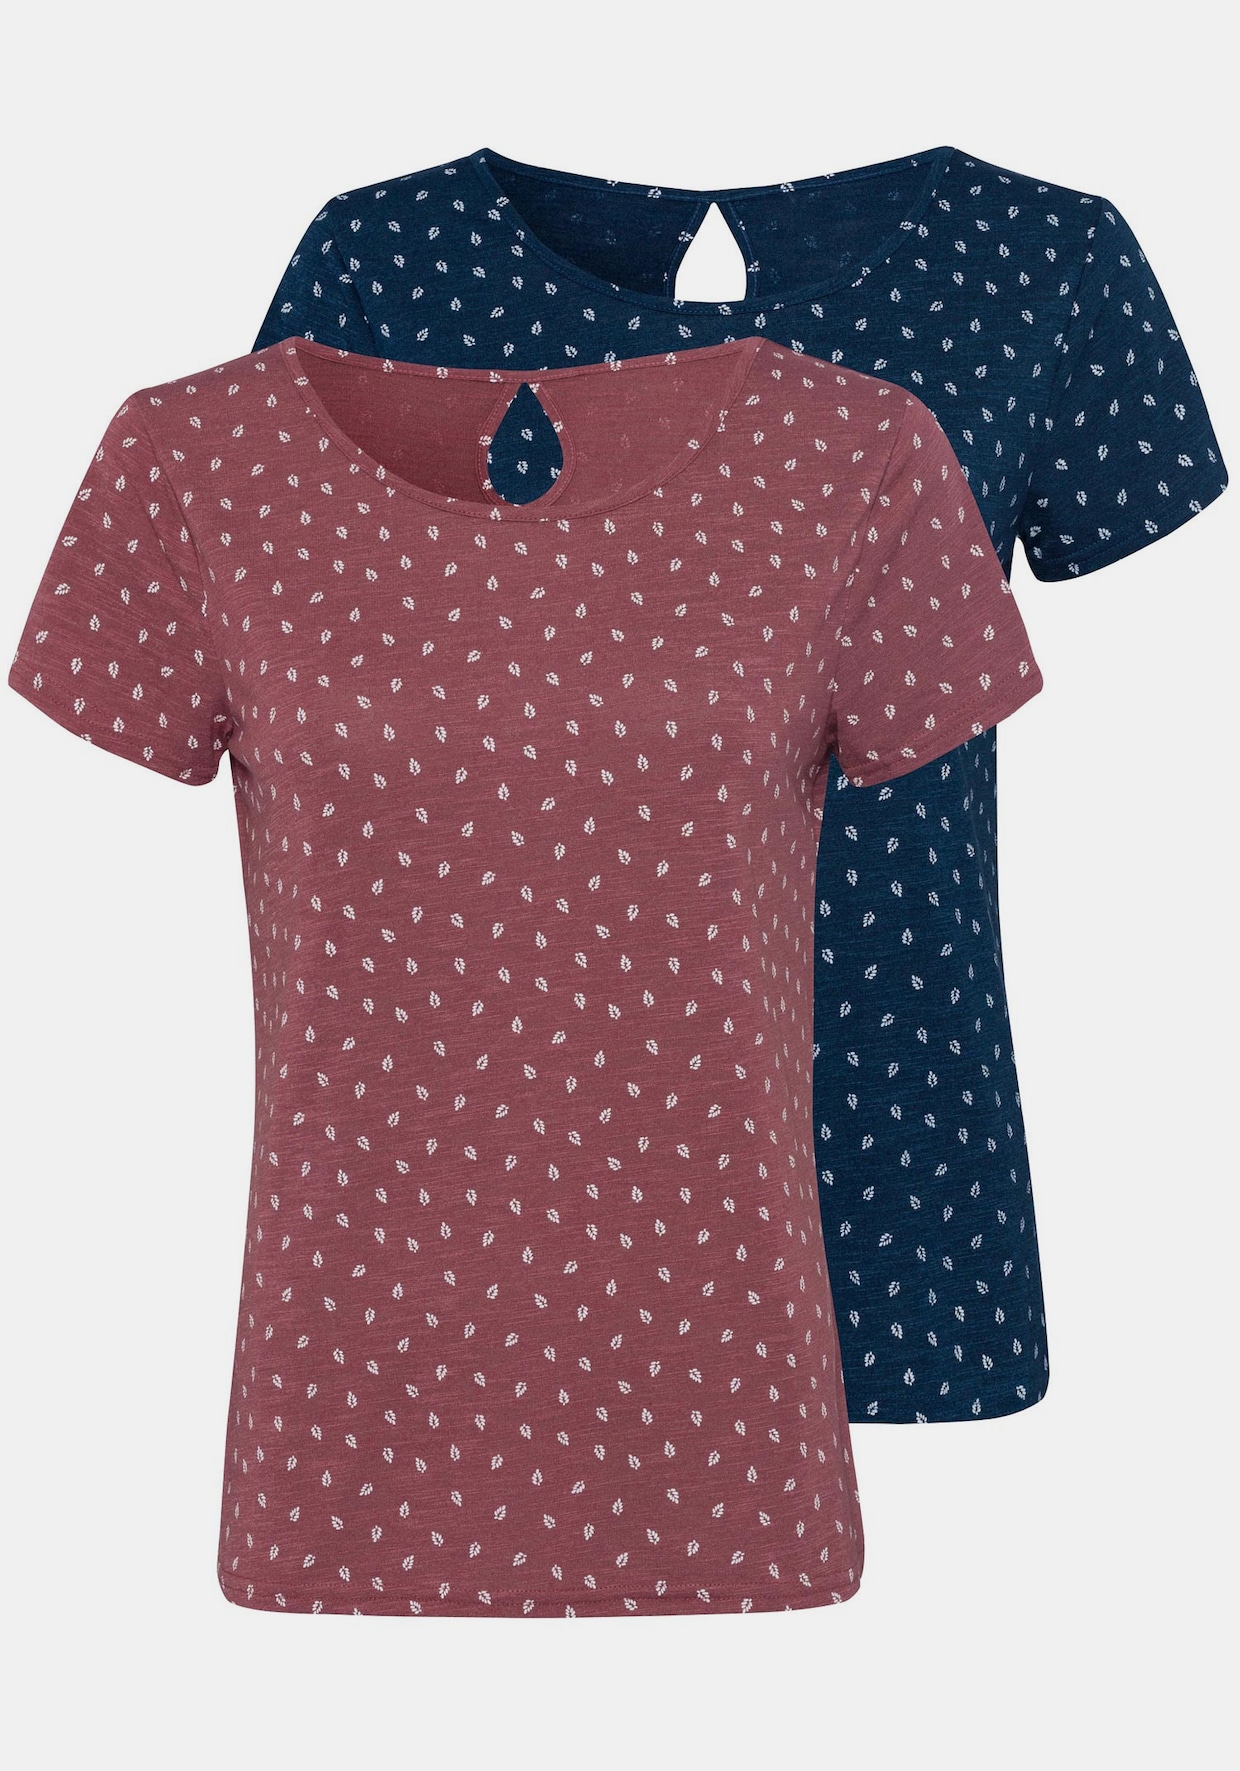 LASCANA T-Shirt - 1x beere-gemustert + 1x navy-gemustert